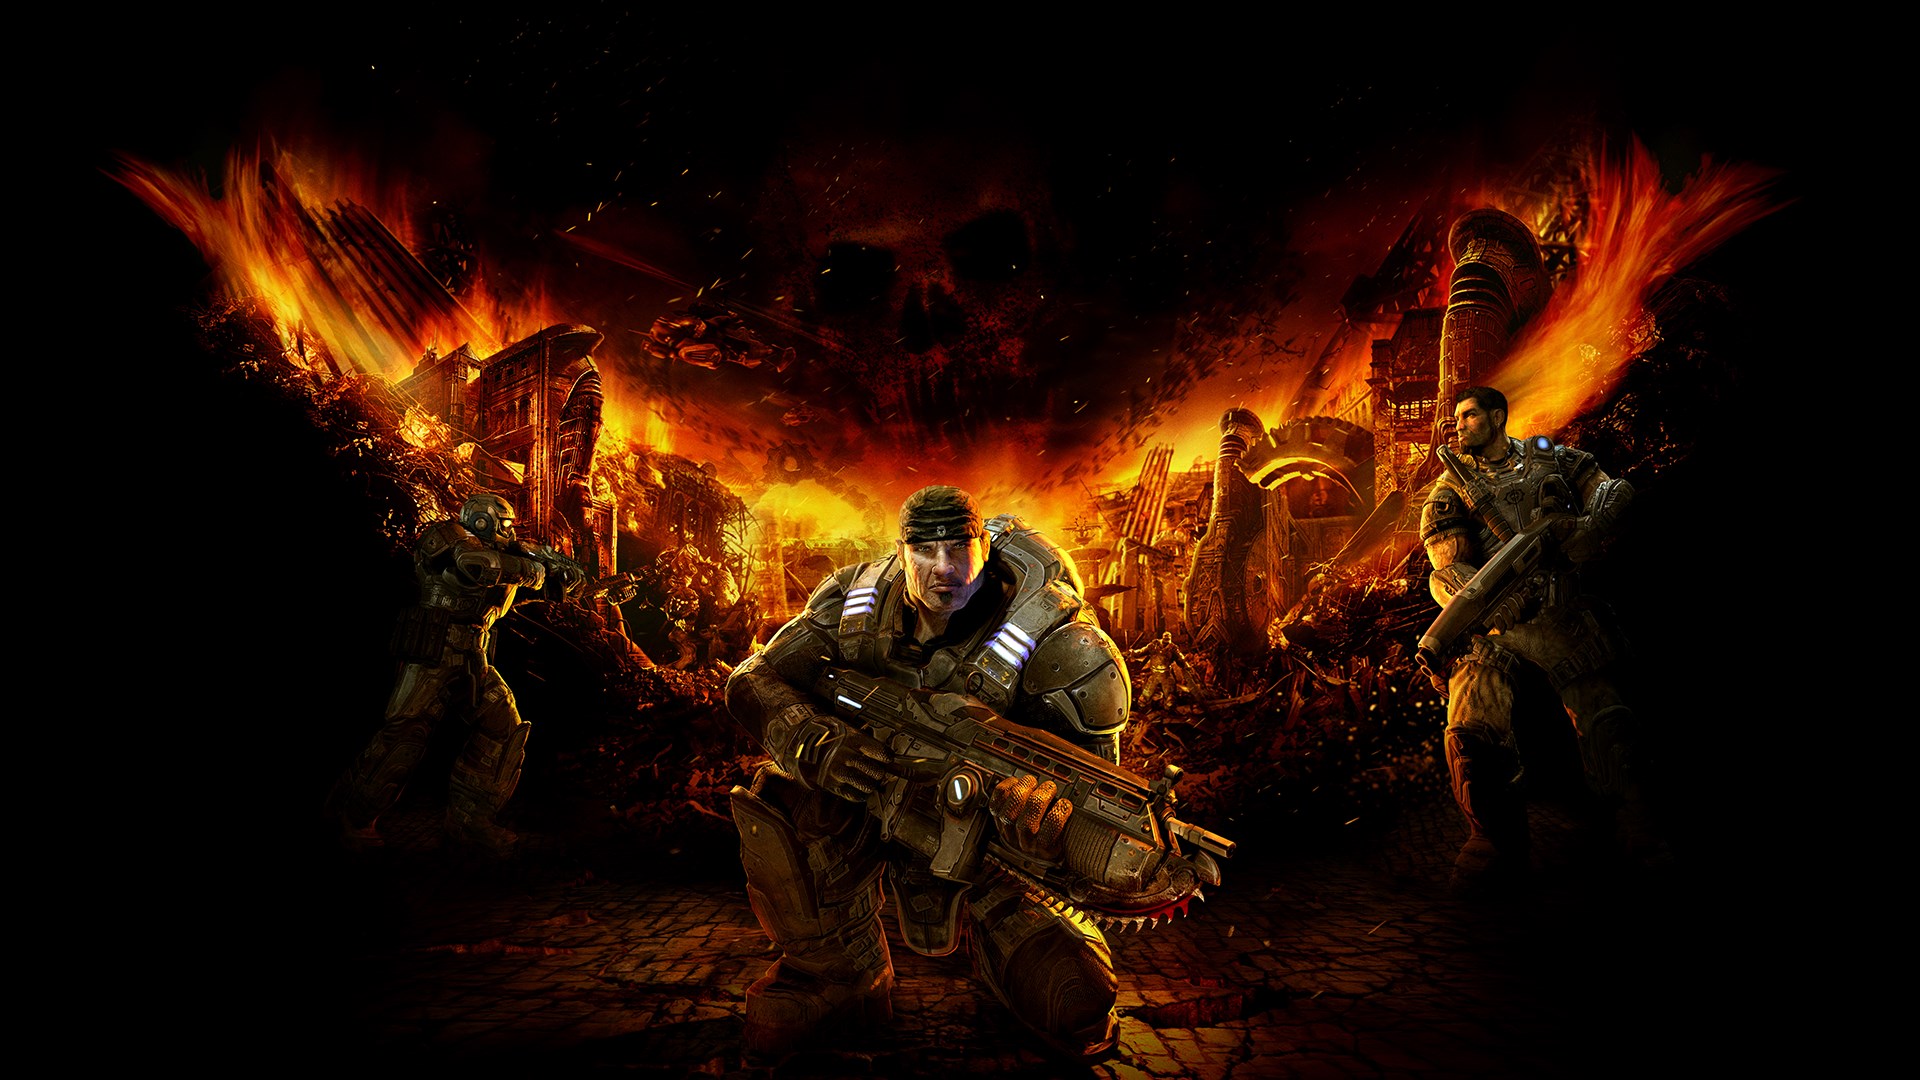 Buy Gears of War 2 - Microsoft Store en-HU